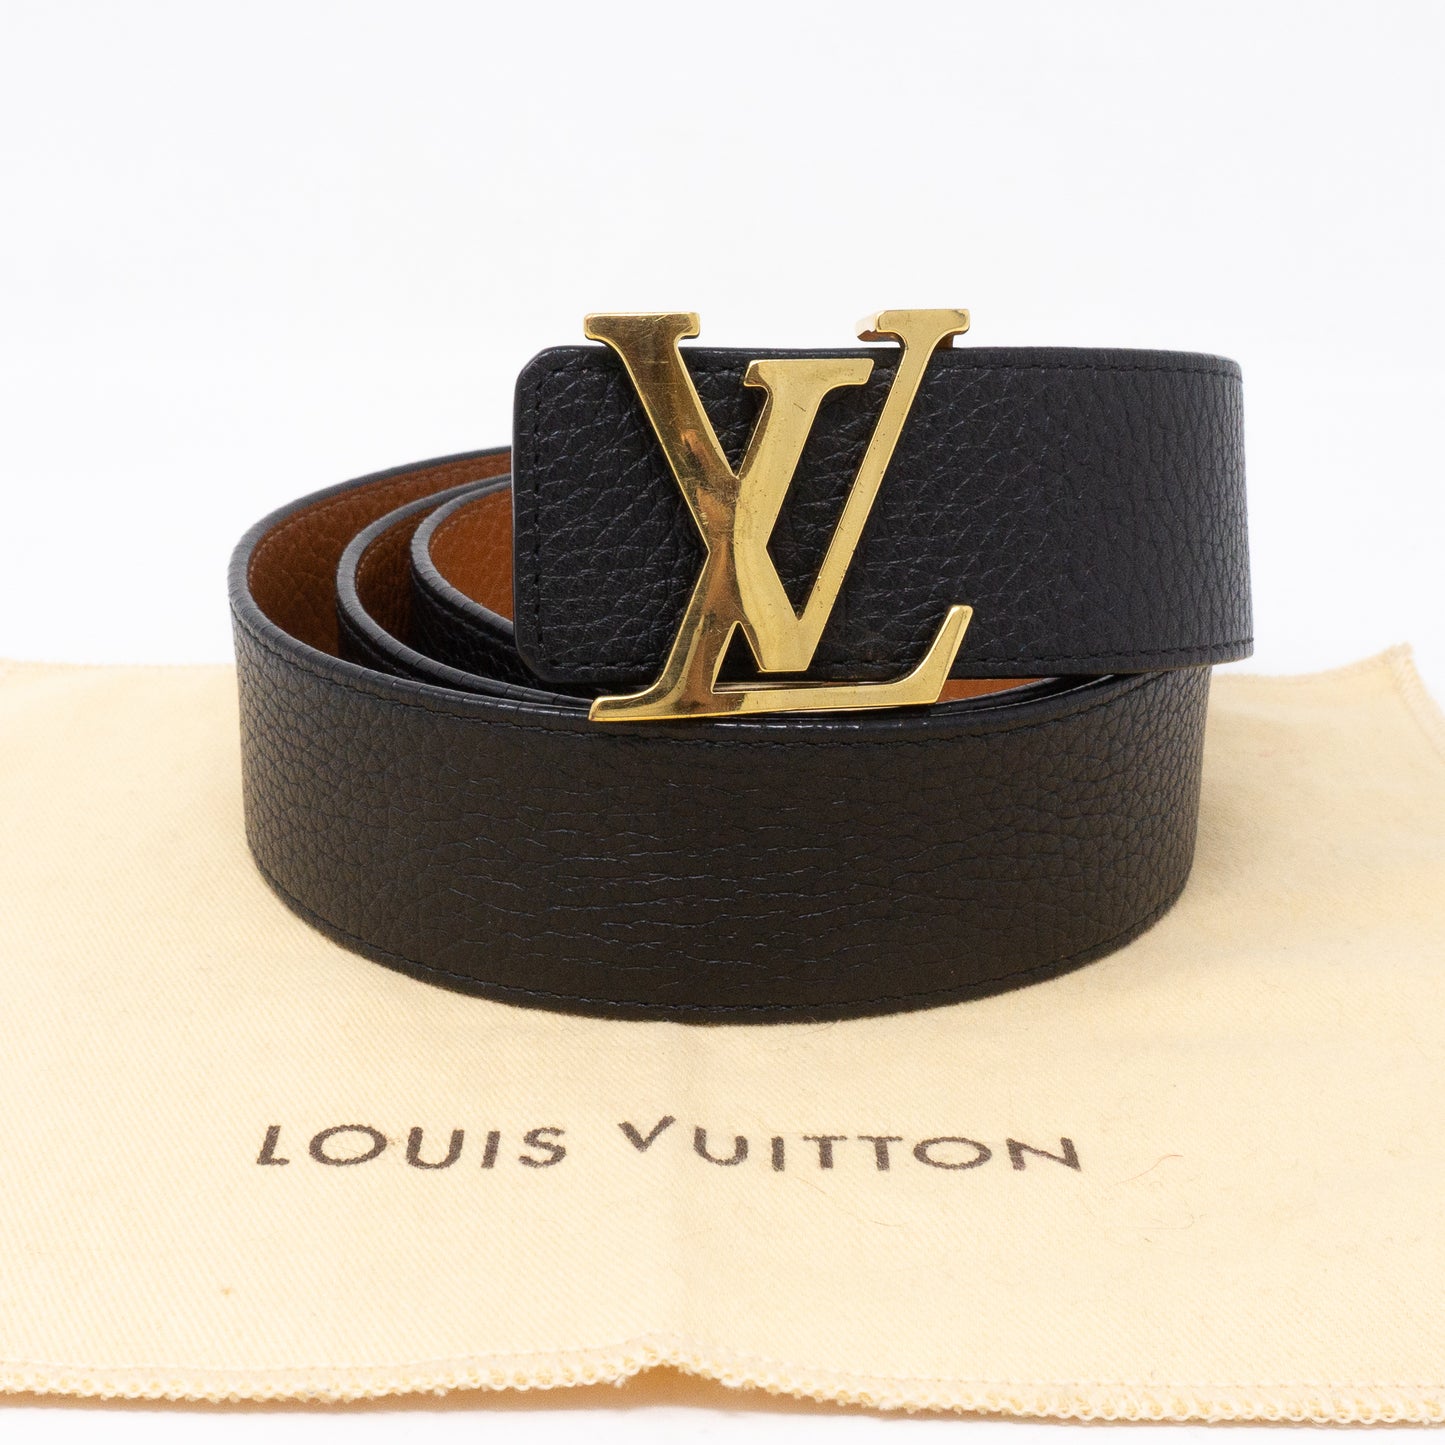 LV Belt - For Men - Gold Bukel